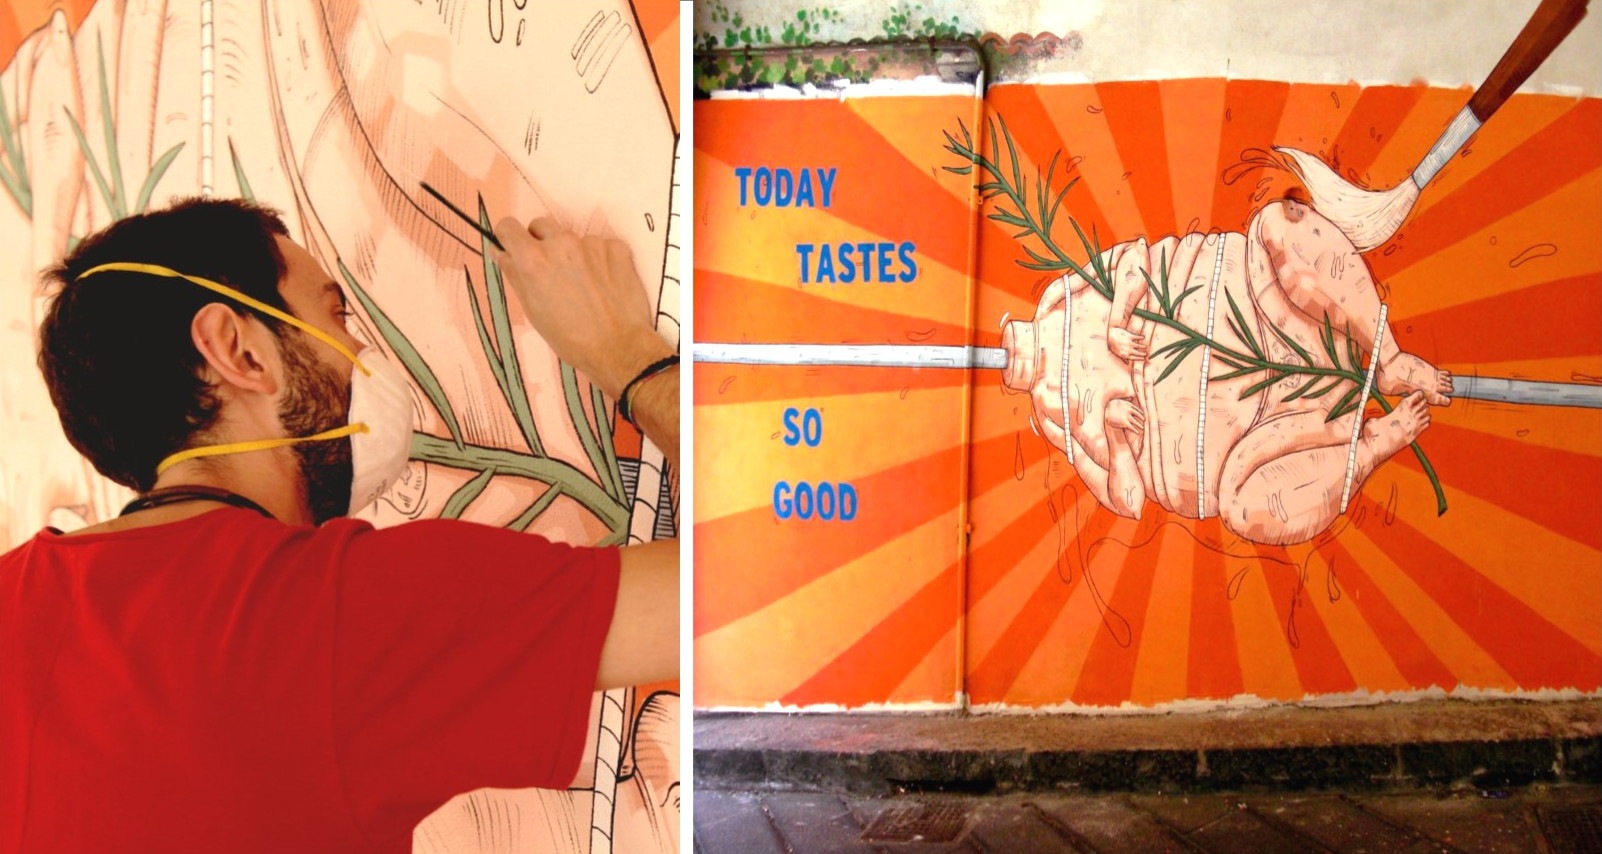 Giardini Naxos ed il murales dello scandalo: un messaggio contro il “cibo spazzatura”